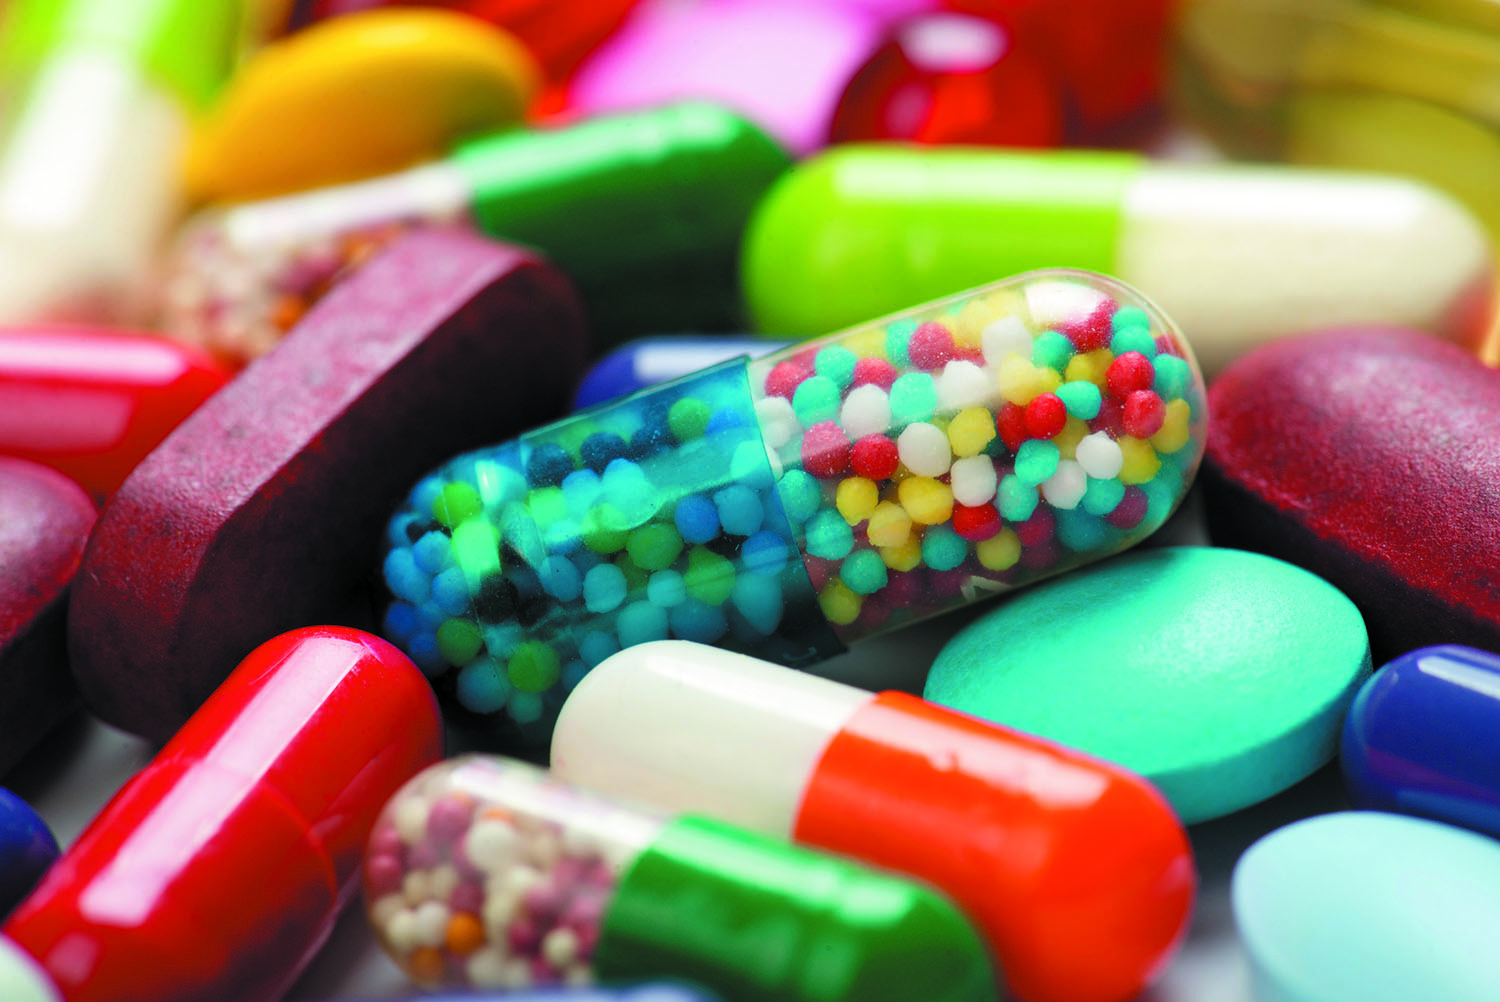 هيئة الدواء المصرية تُحذر من إستخدام بعض الأدوية والفيتامينات بدون وصفة طبية وتوضح أضرارها